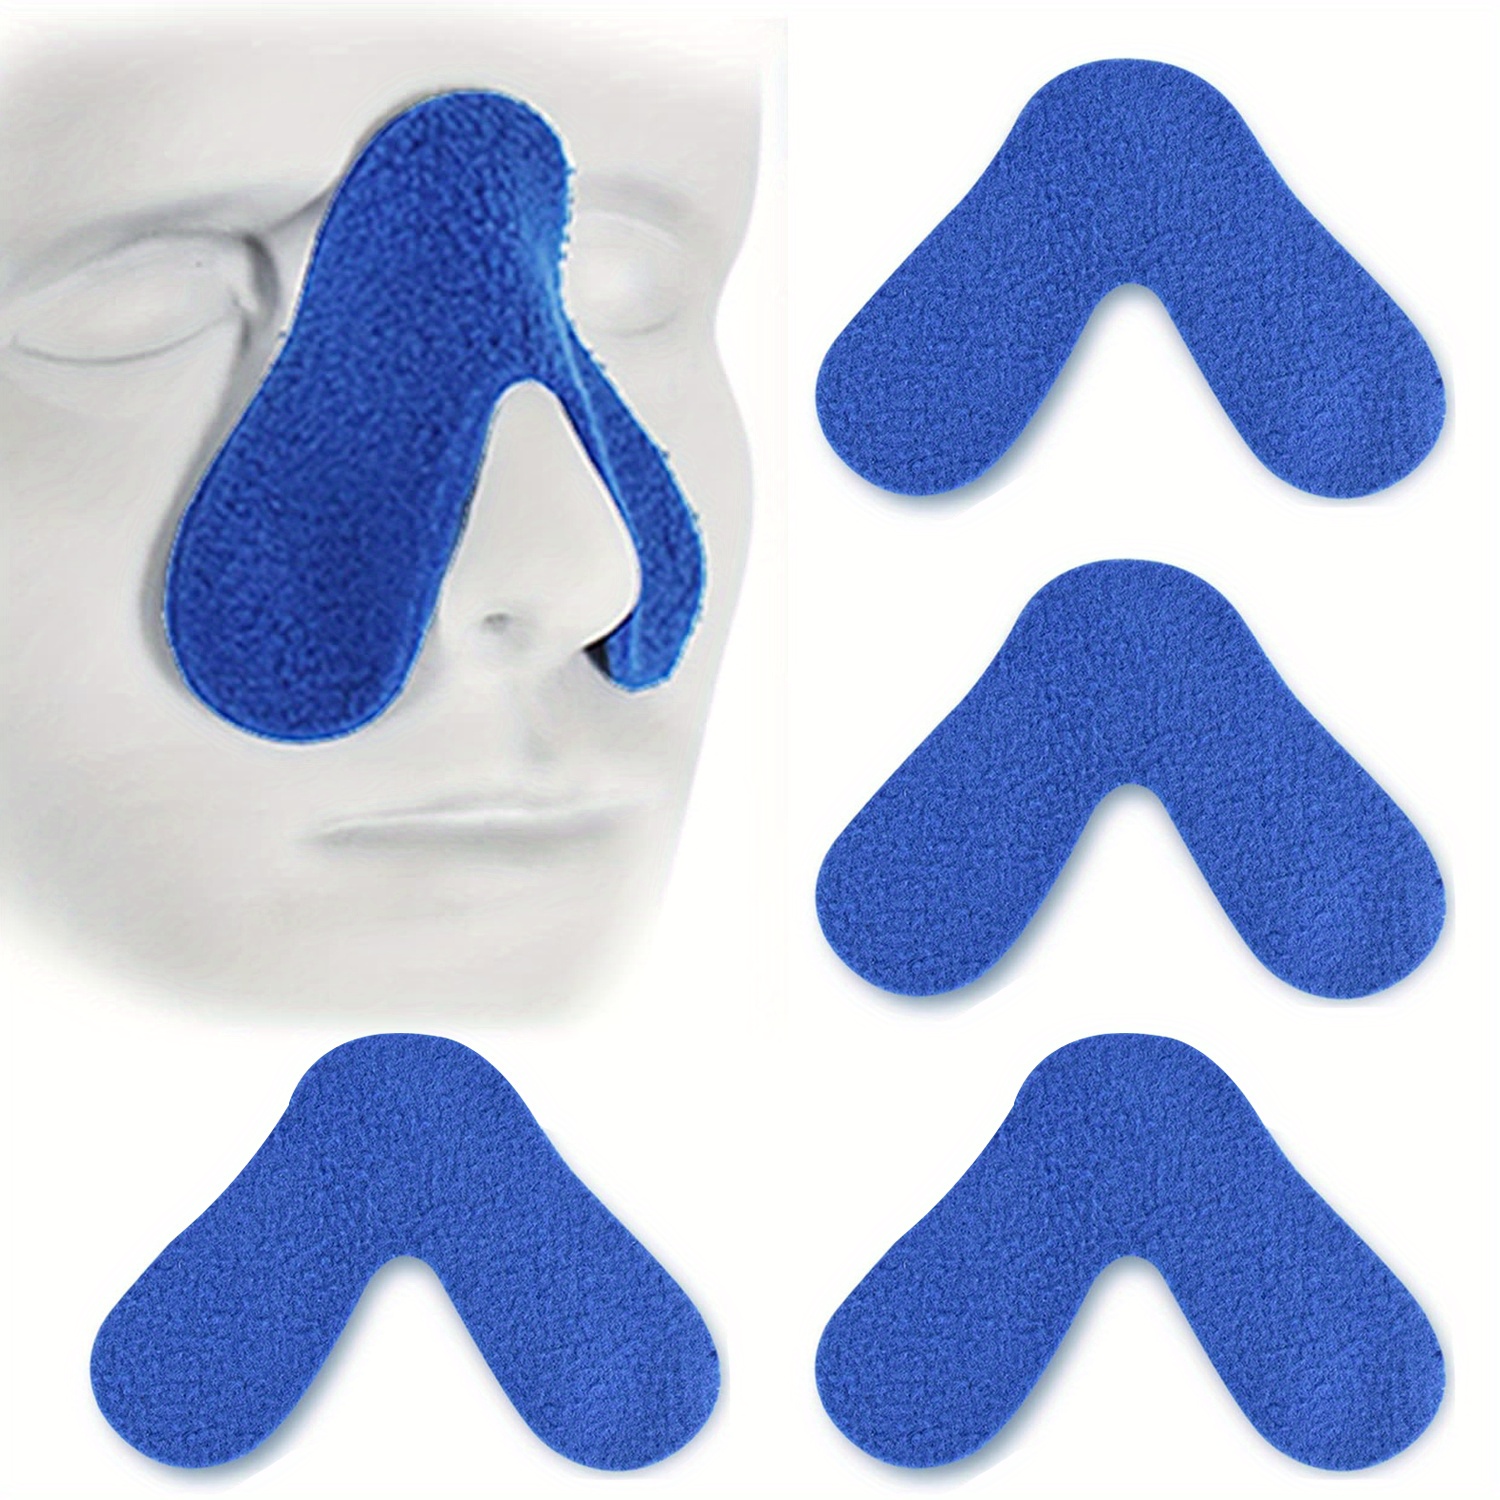 Protector de nariz para nariz rota, protector facial de fibra de carbono  ajustable con relleno, protección contra lesiones de impacto en la nariz y  la